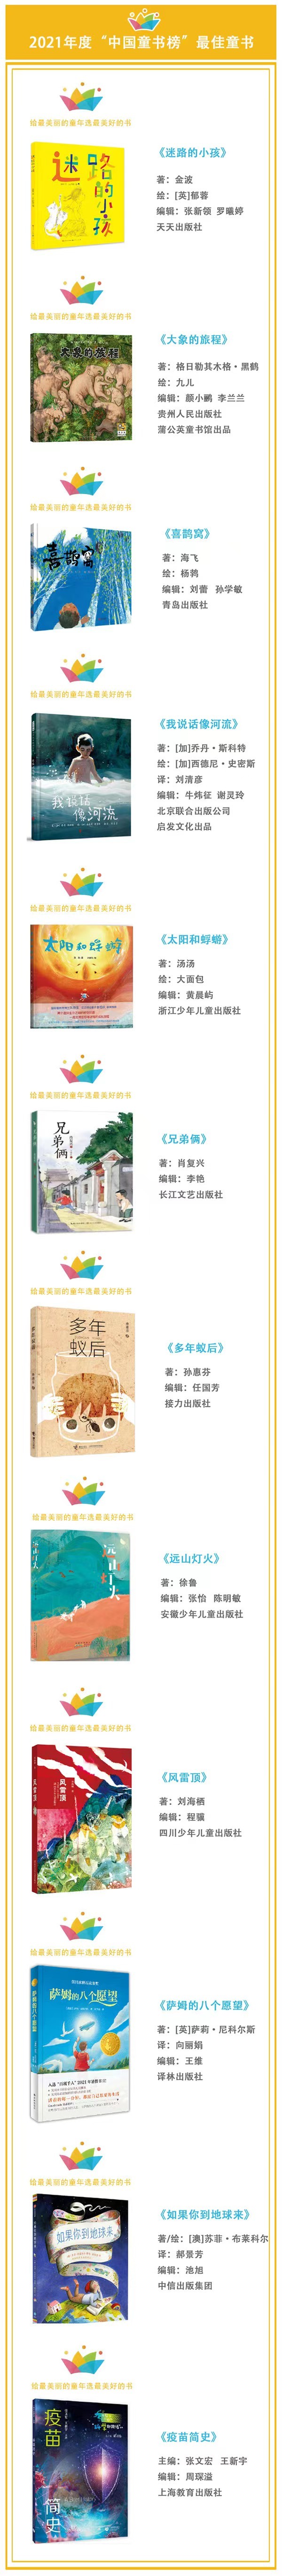 推荐给孩子们的100本书 第九届“中国童书榜”发布百佳书单